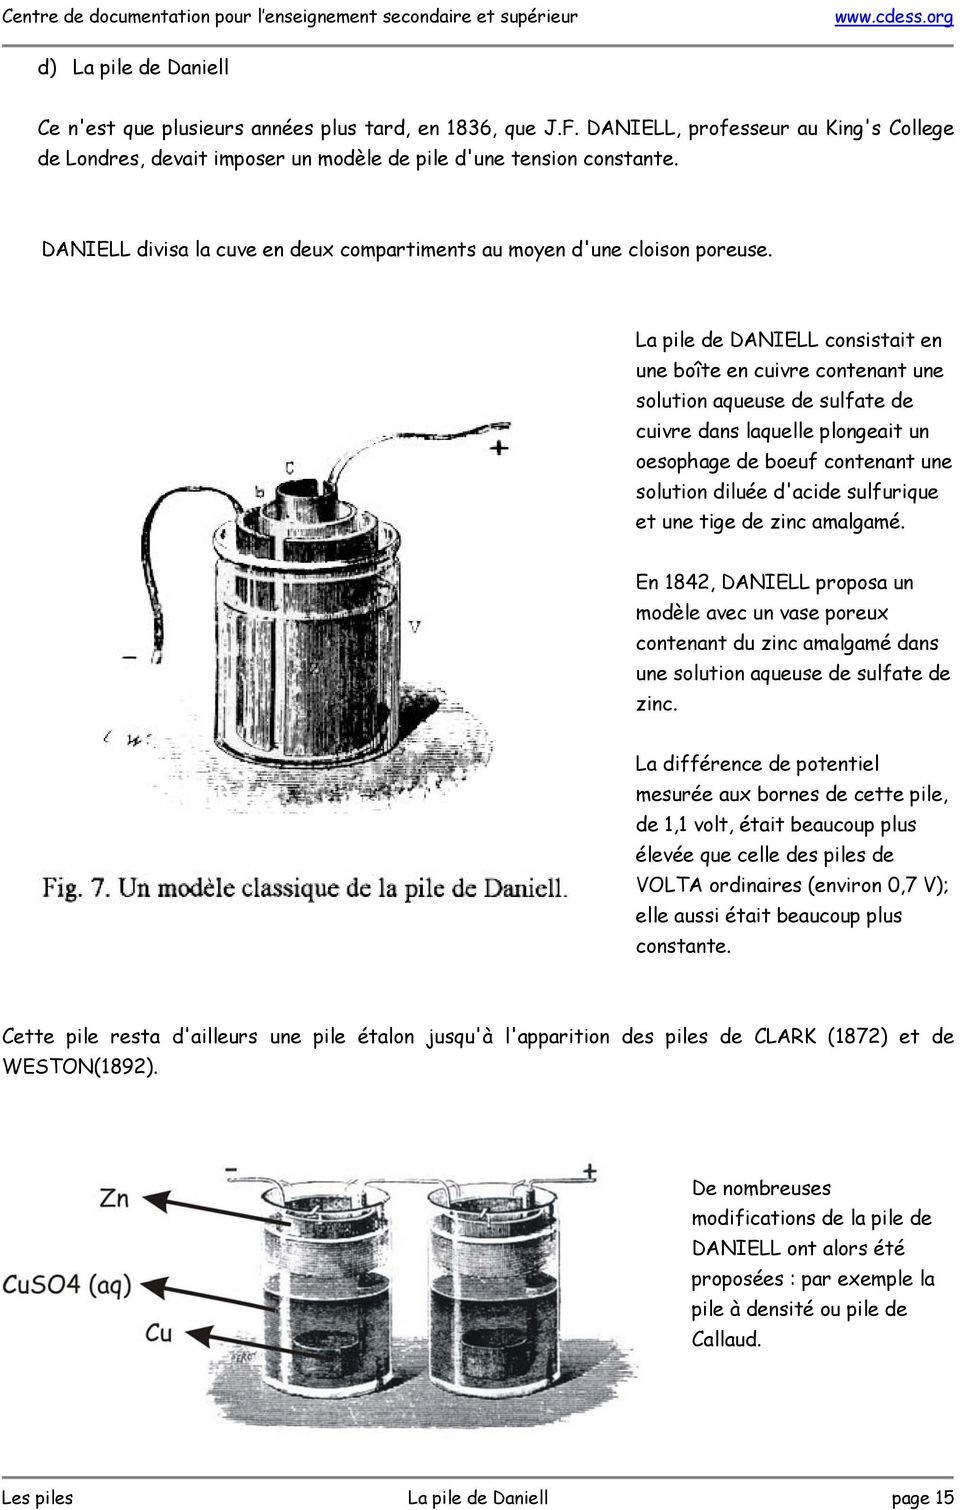 La pile de DANIELL consistait en une boîte en cuivre contenant une solution aqueuse de sulfate de cuivre dans laquelle plongeait un oesophage de boeuf contenant une solution diluée d'acide sulfurique